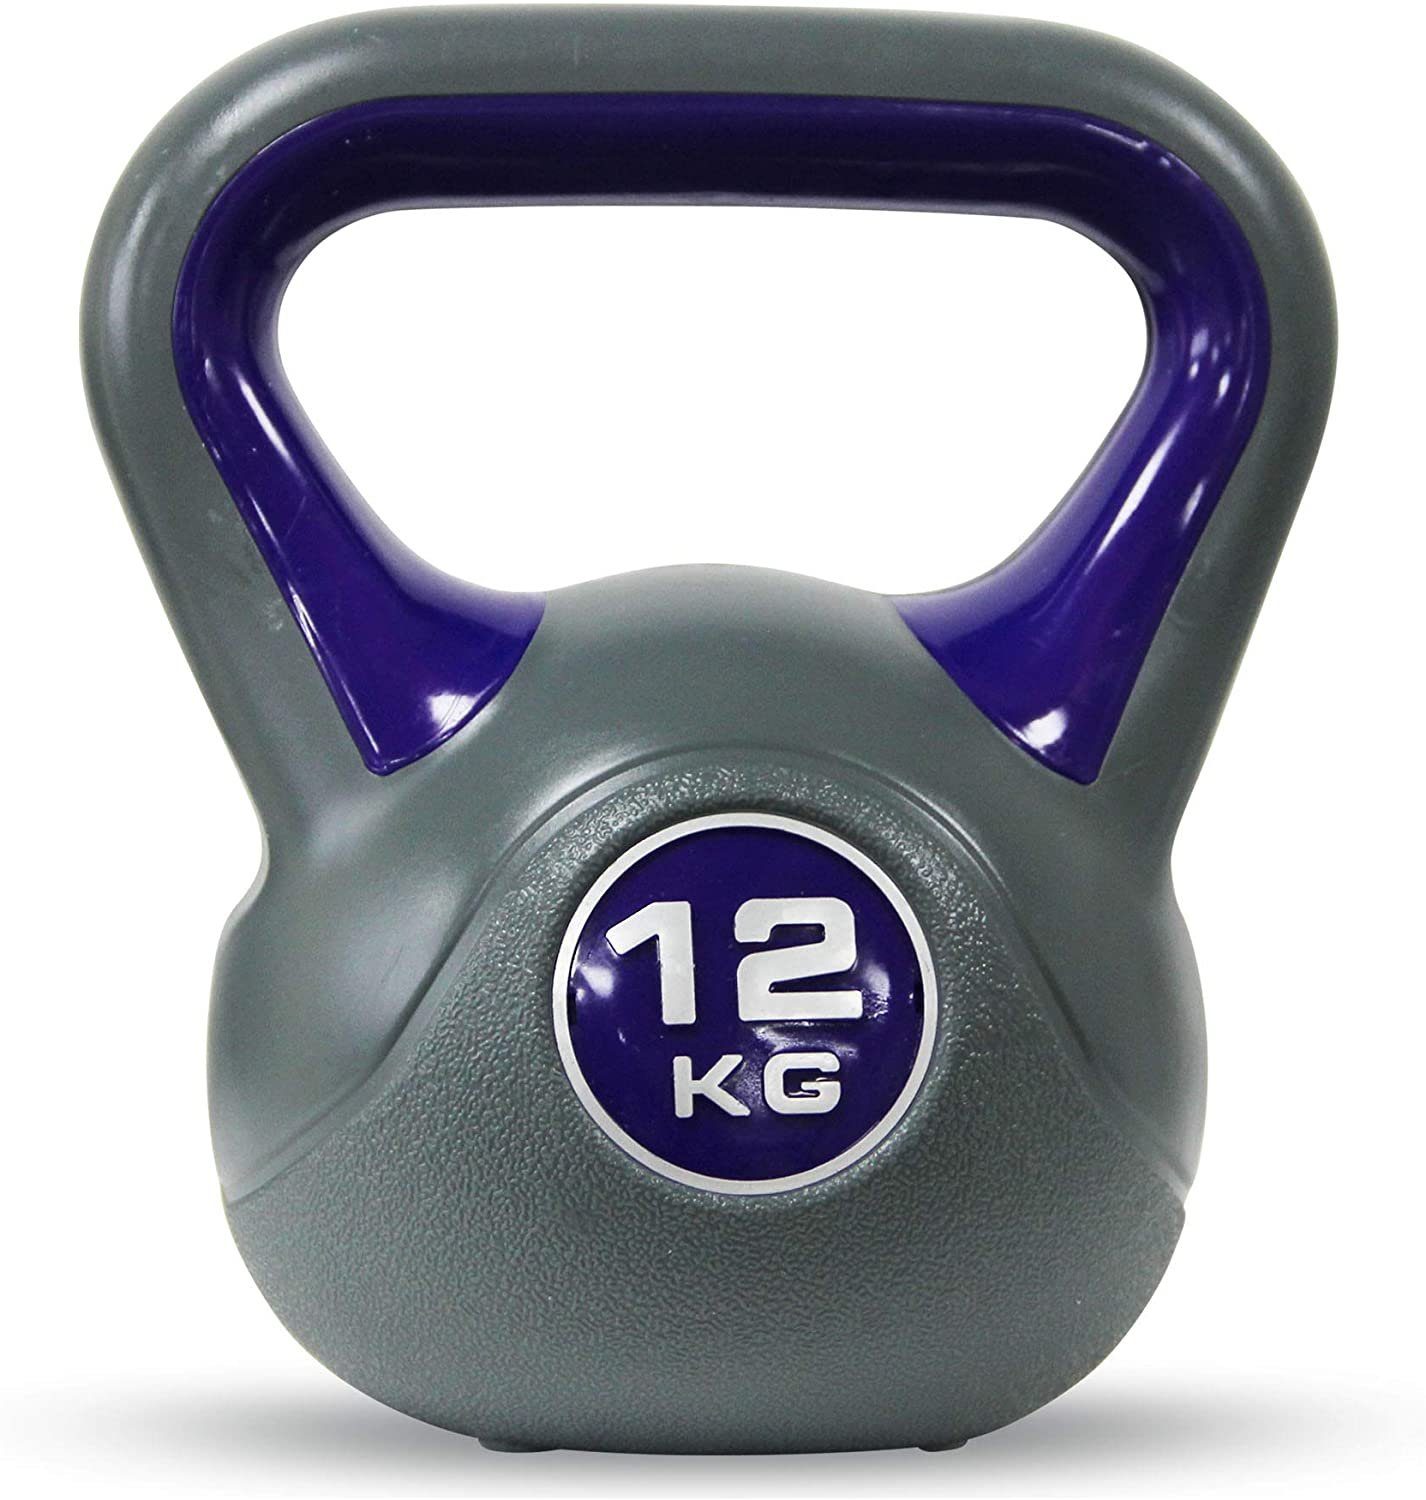 Hellgrün - Gew., versch. & Hellgrn 16 2-20 Workout kg I Kg Farben Kugelhantel inkl. POWRX Kettlebell Kunststoff